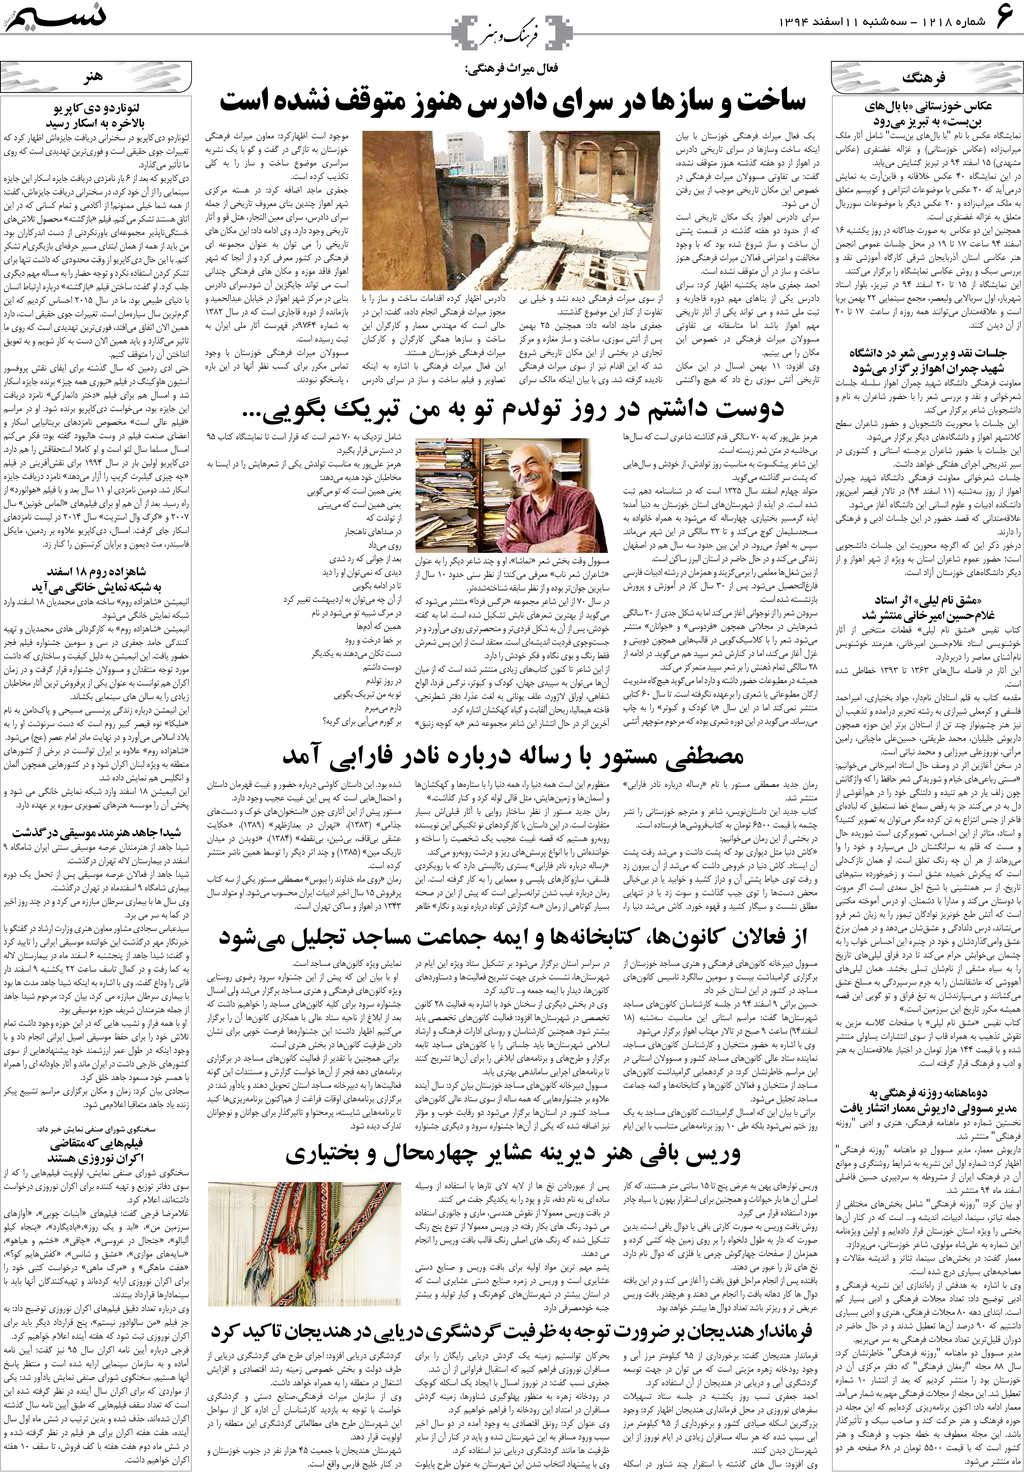 صفحه فرهنگ و هنر روزنامه نسیم شماره 1218